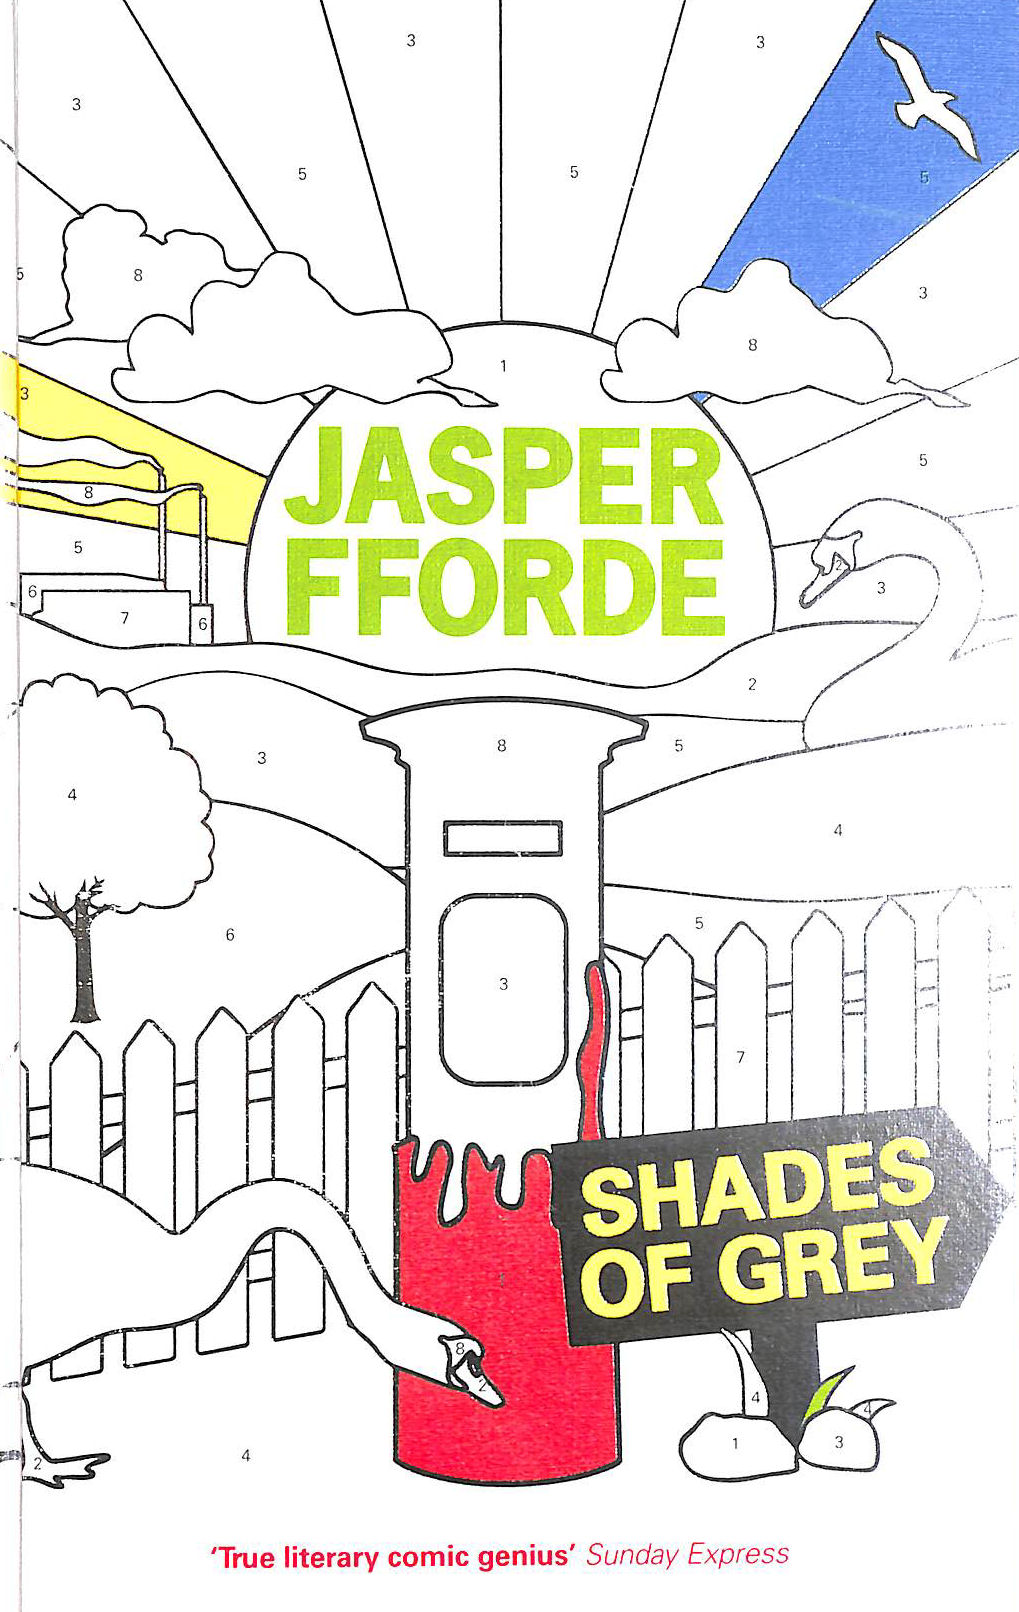 JASPER FFORDE - Shades of Grey